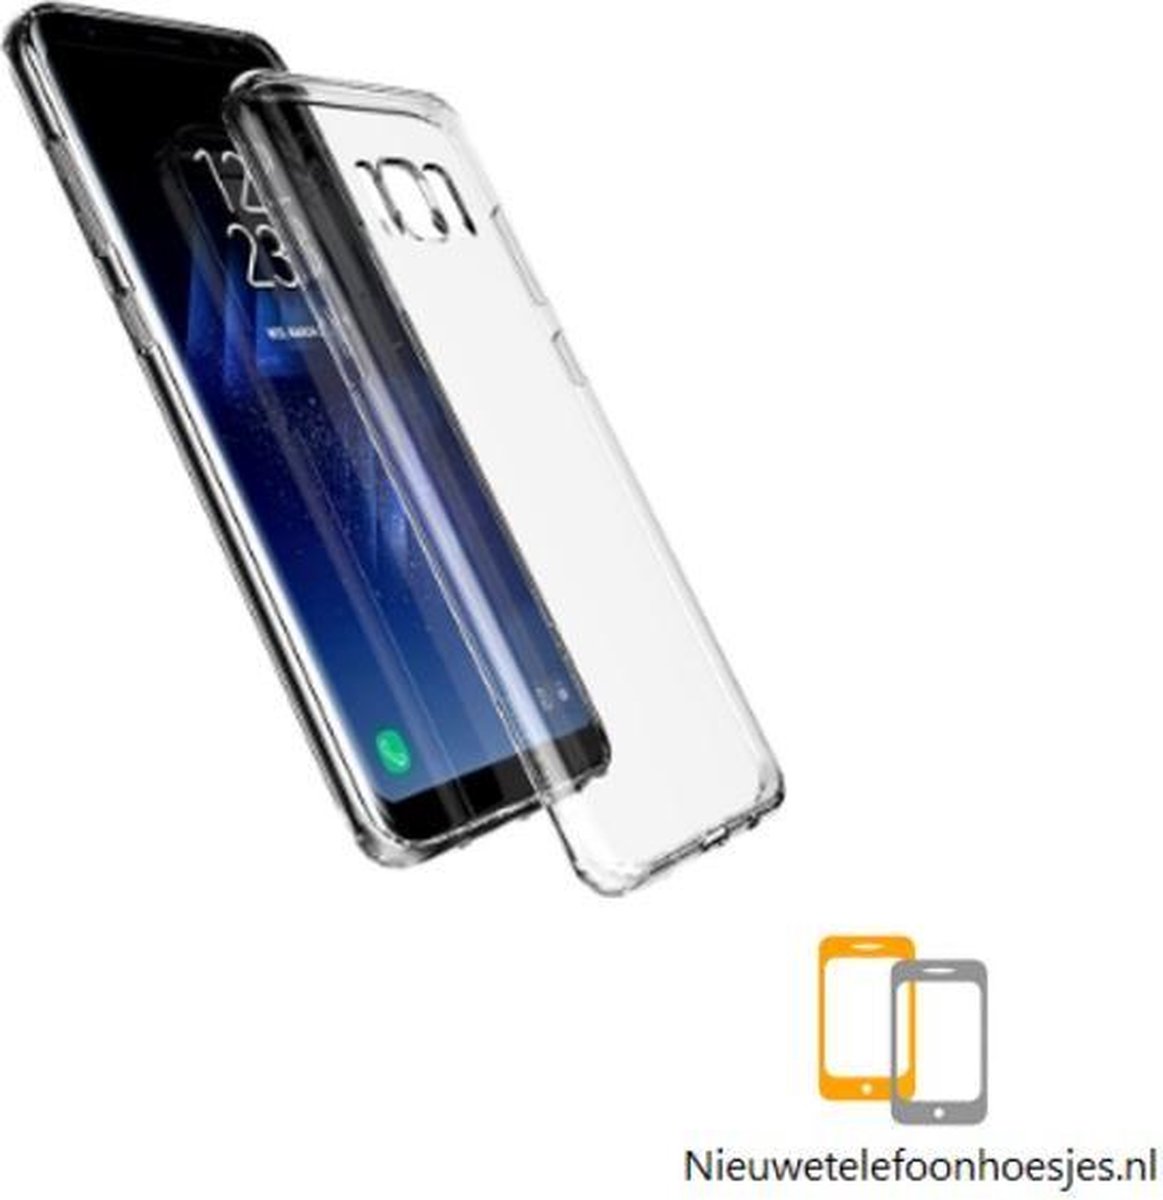 Nieuwetelefoonhoesjes.nl | Transparant siliconen cover hoesje voor de Samsung Galaxy S8